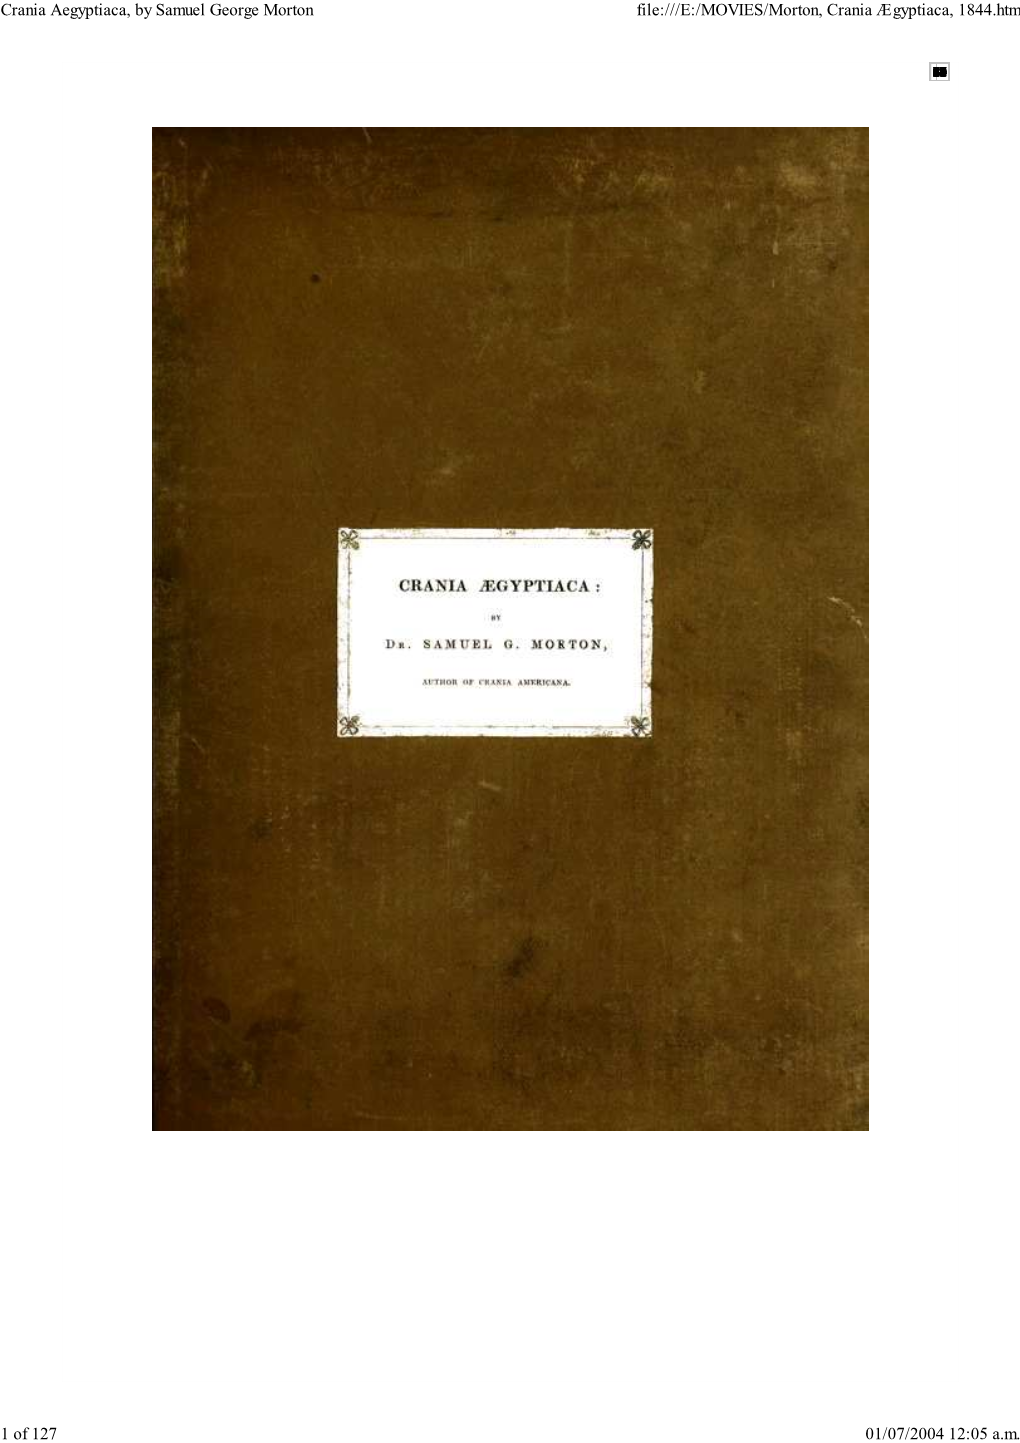 Crania Aegyptiaca, by Samuel George Morton File:///E:/MOVIES/Morton, Crania Ægyptiaca, 1844.Htm